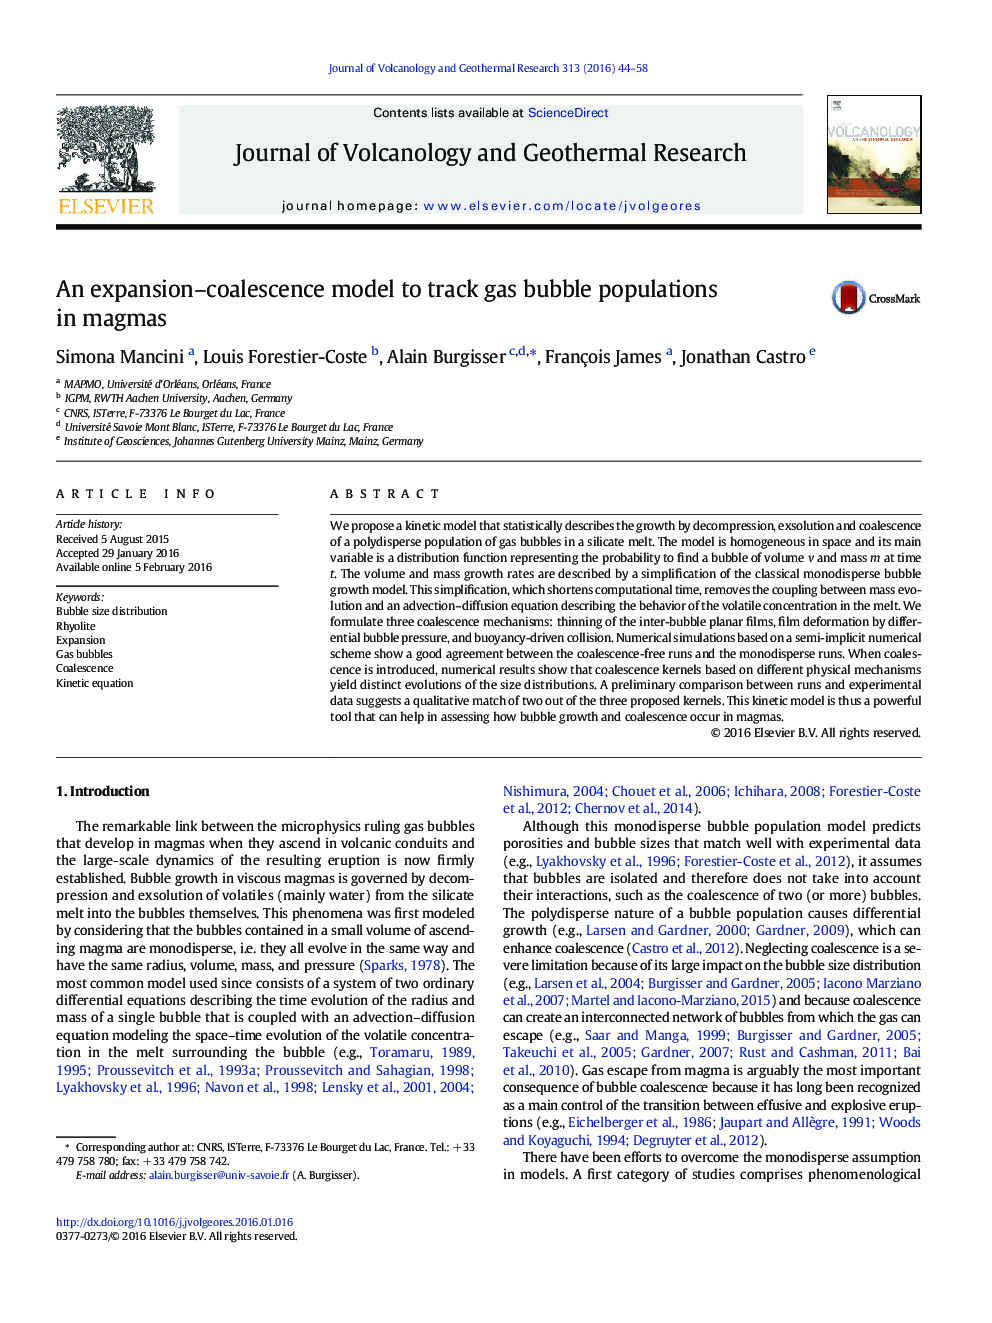 یک مدل انعطاف پذیری توسعه برای پیگیری جمعیت حباب گاز در ماگما 